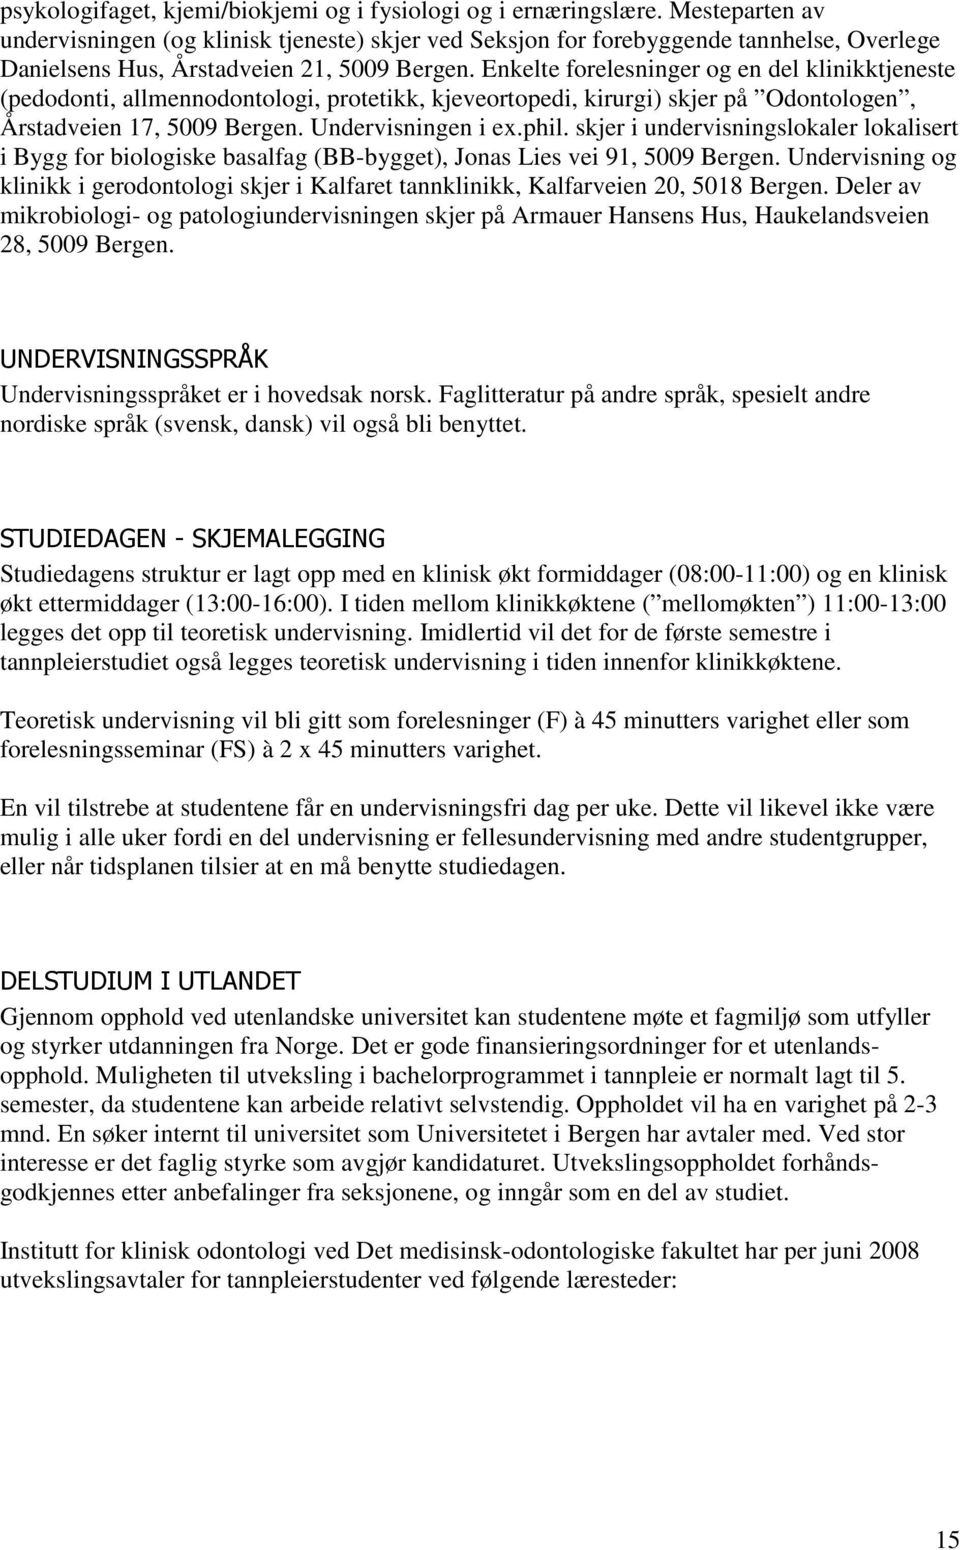 Enkelte forelesninger og en del klinikktjeneste (pedodonti, allmennodontologi, protetikk, kjeveortopedi, kirurgi) skjer på Odontologen, Årstadveien 17, 5009 Bergen. Undervisningen i e.phil.